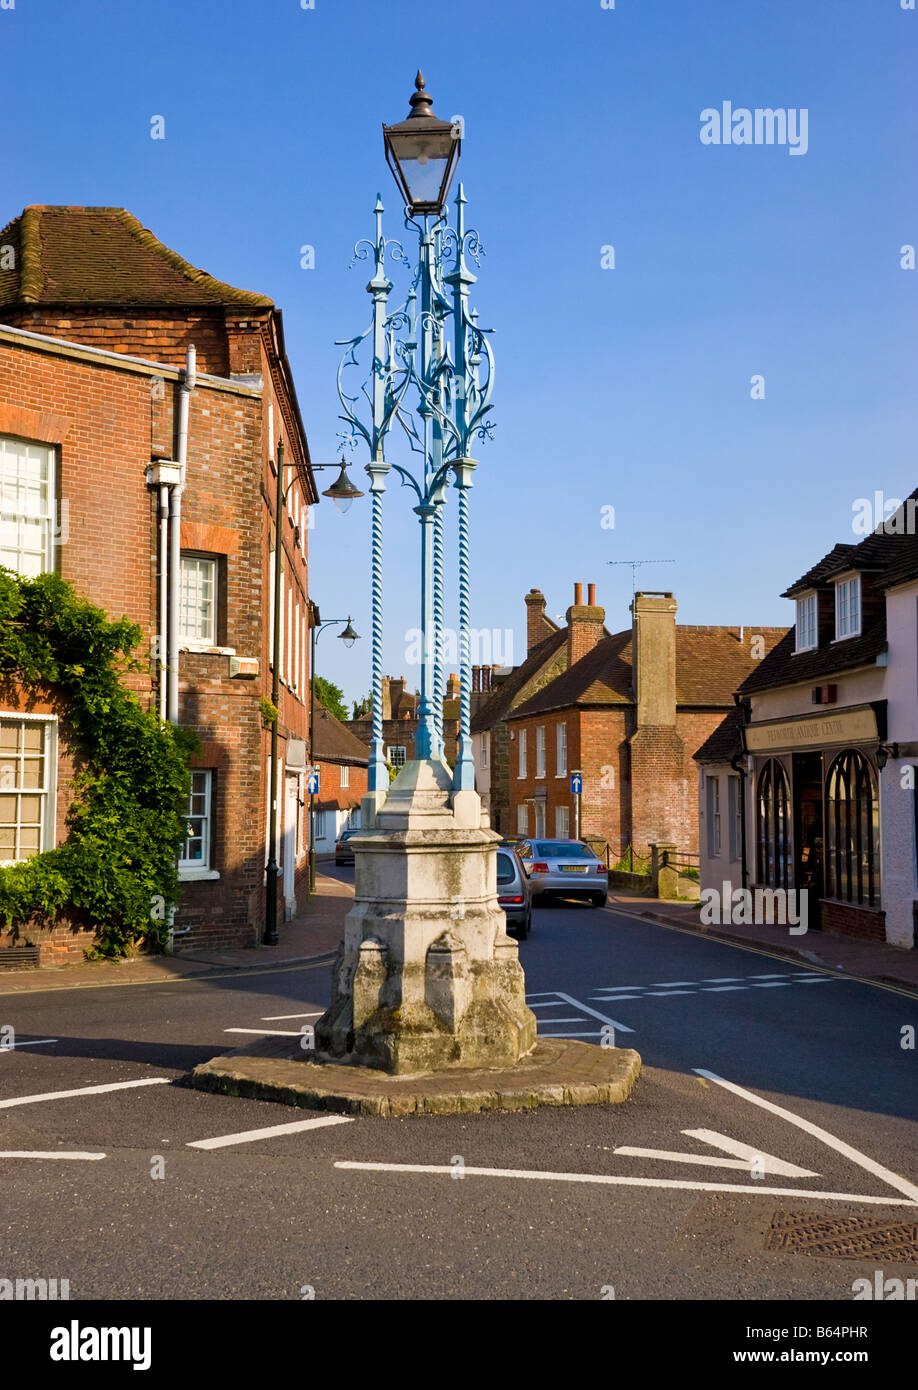 Señor luz de Gas Leconfield monumento Petworth West Sussex England Reino Unido Foto de stock